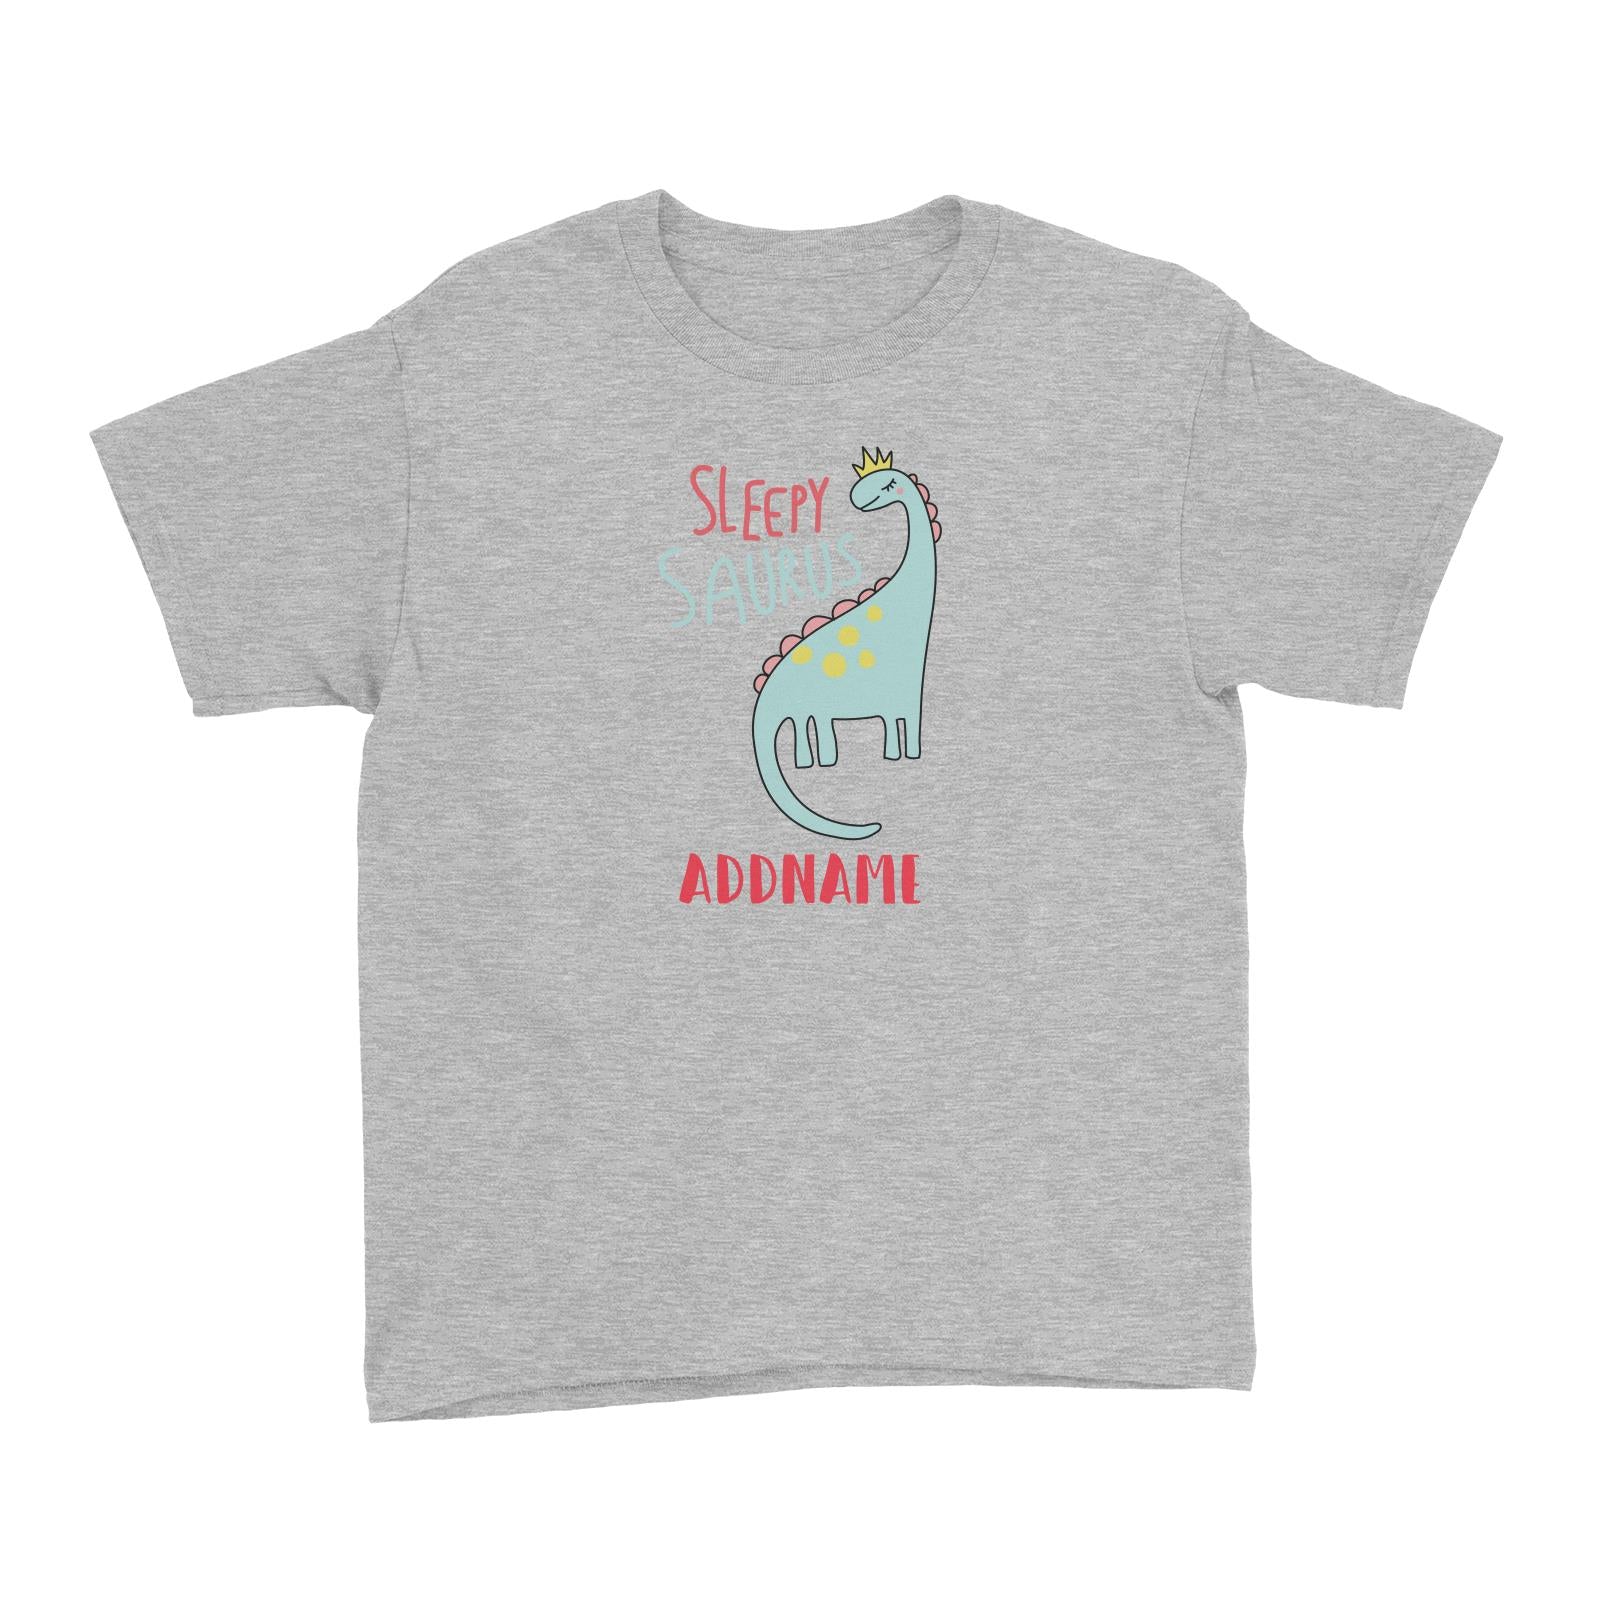 Cool Vibrant Series Sleepysaurus Addname Kid's T-Shirt